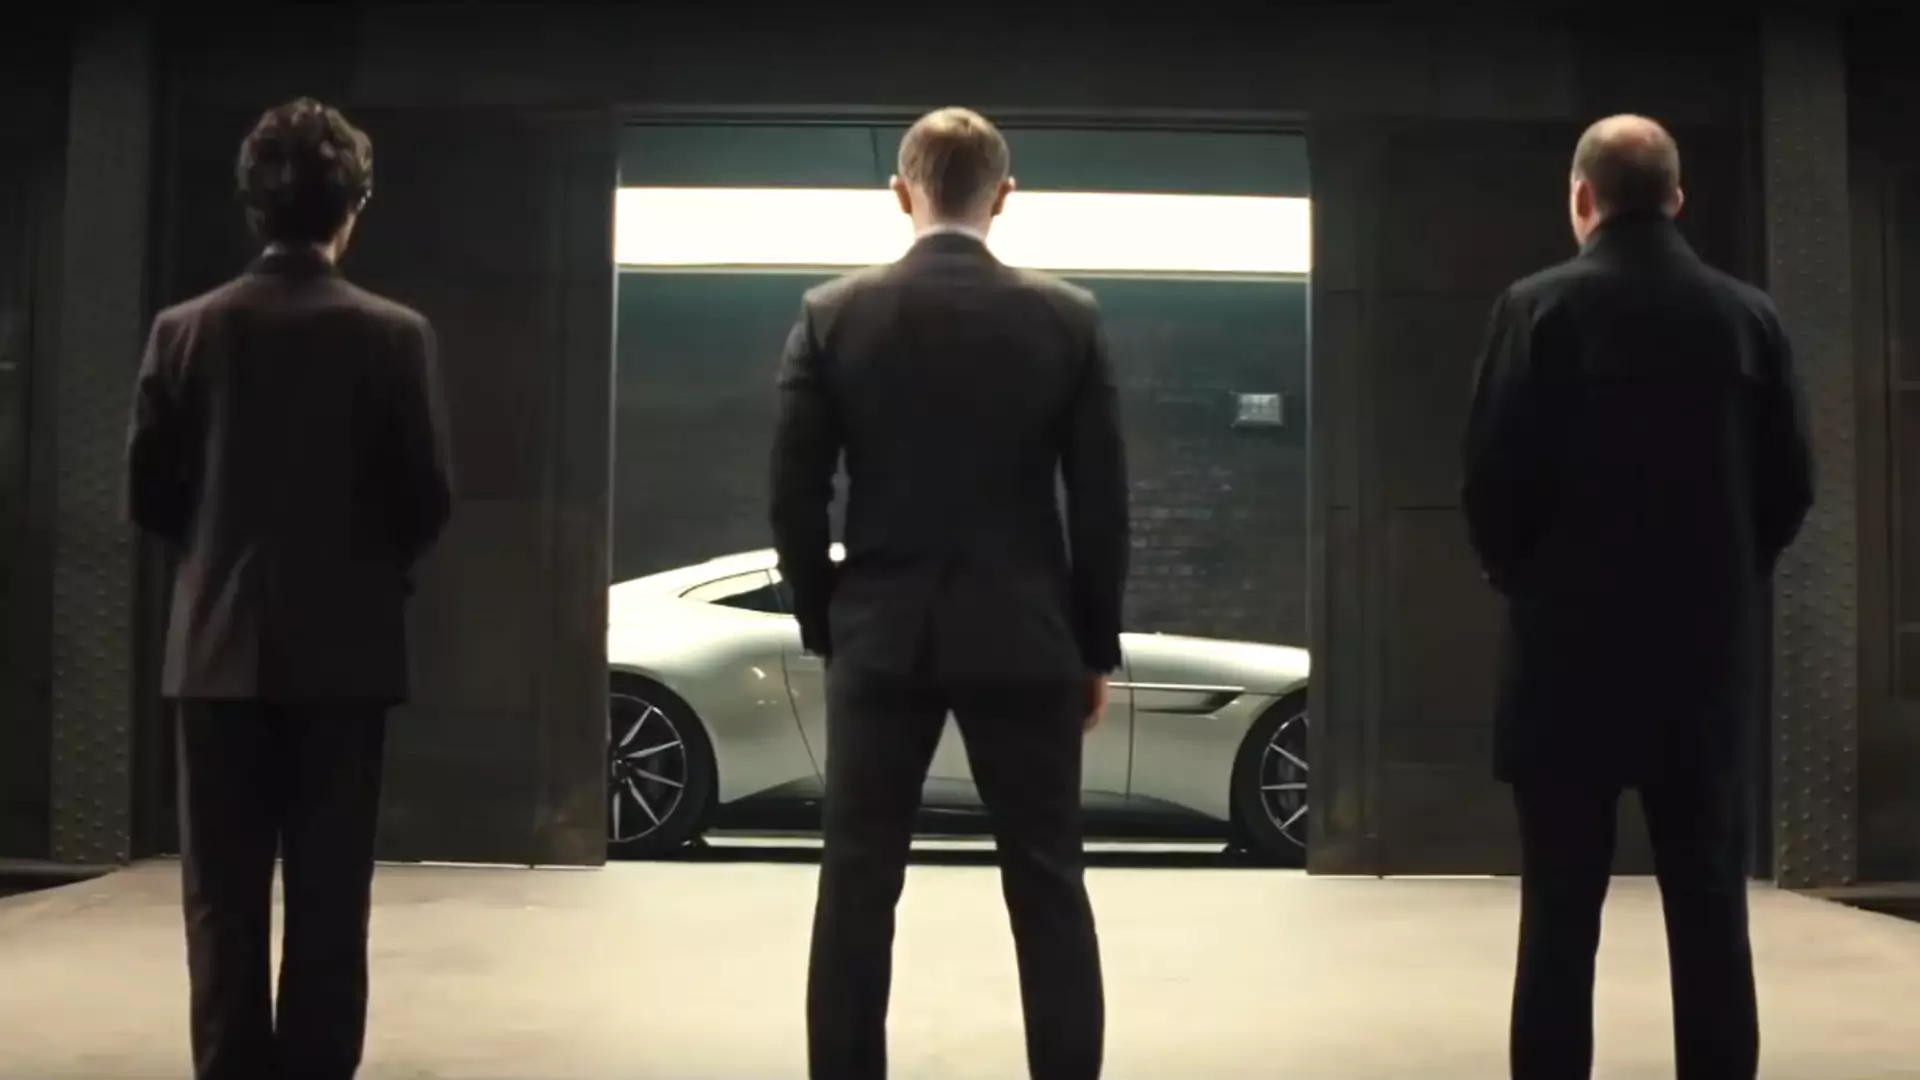 Kto zagra agenta 007 w 25. filmie o Jamesie Bondzie? Koniec spekulacji, wszystko już jasne